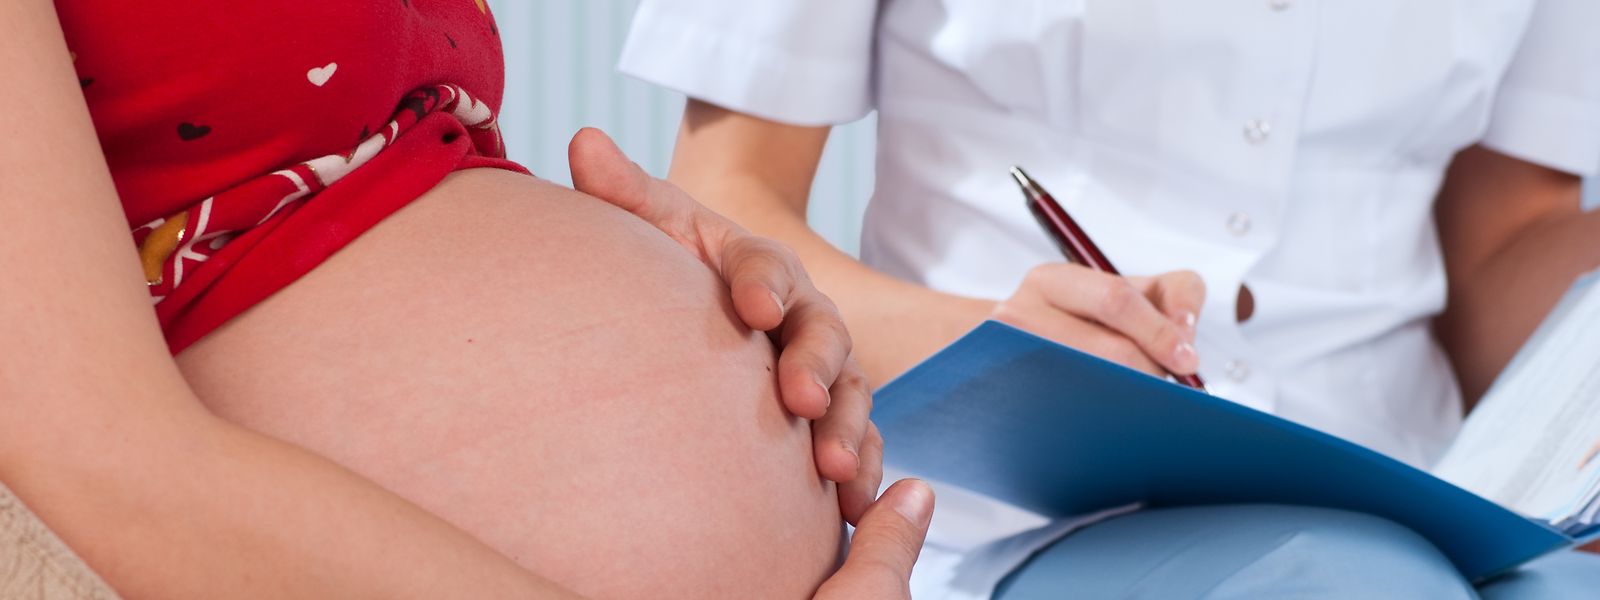 Les consultations à l'hôpital se déroulent uniquement en présence de l'intéressé. Cela s'applique également à la plupart des examens échographiques des femmes enceintes qui doivent se rendre chez le médecin sans le futur père.